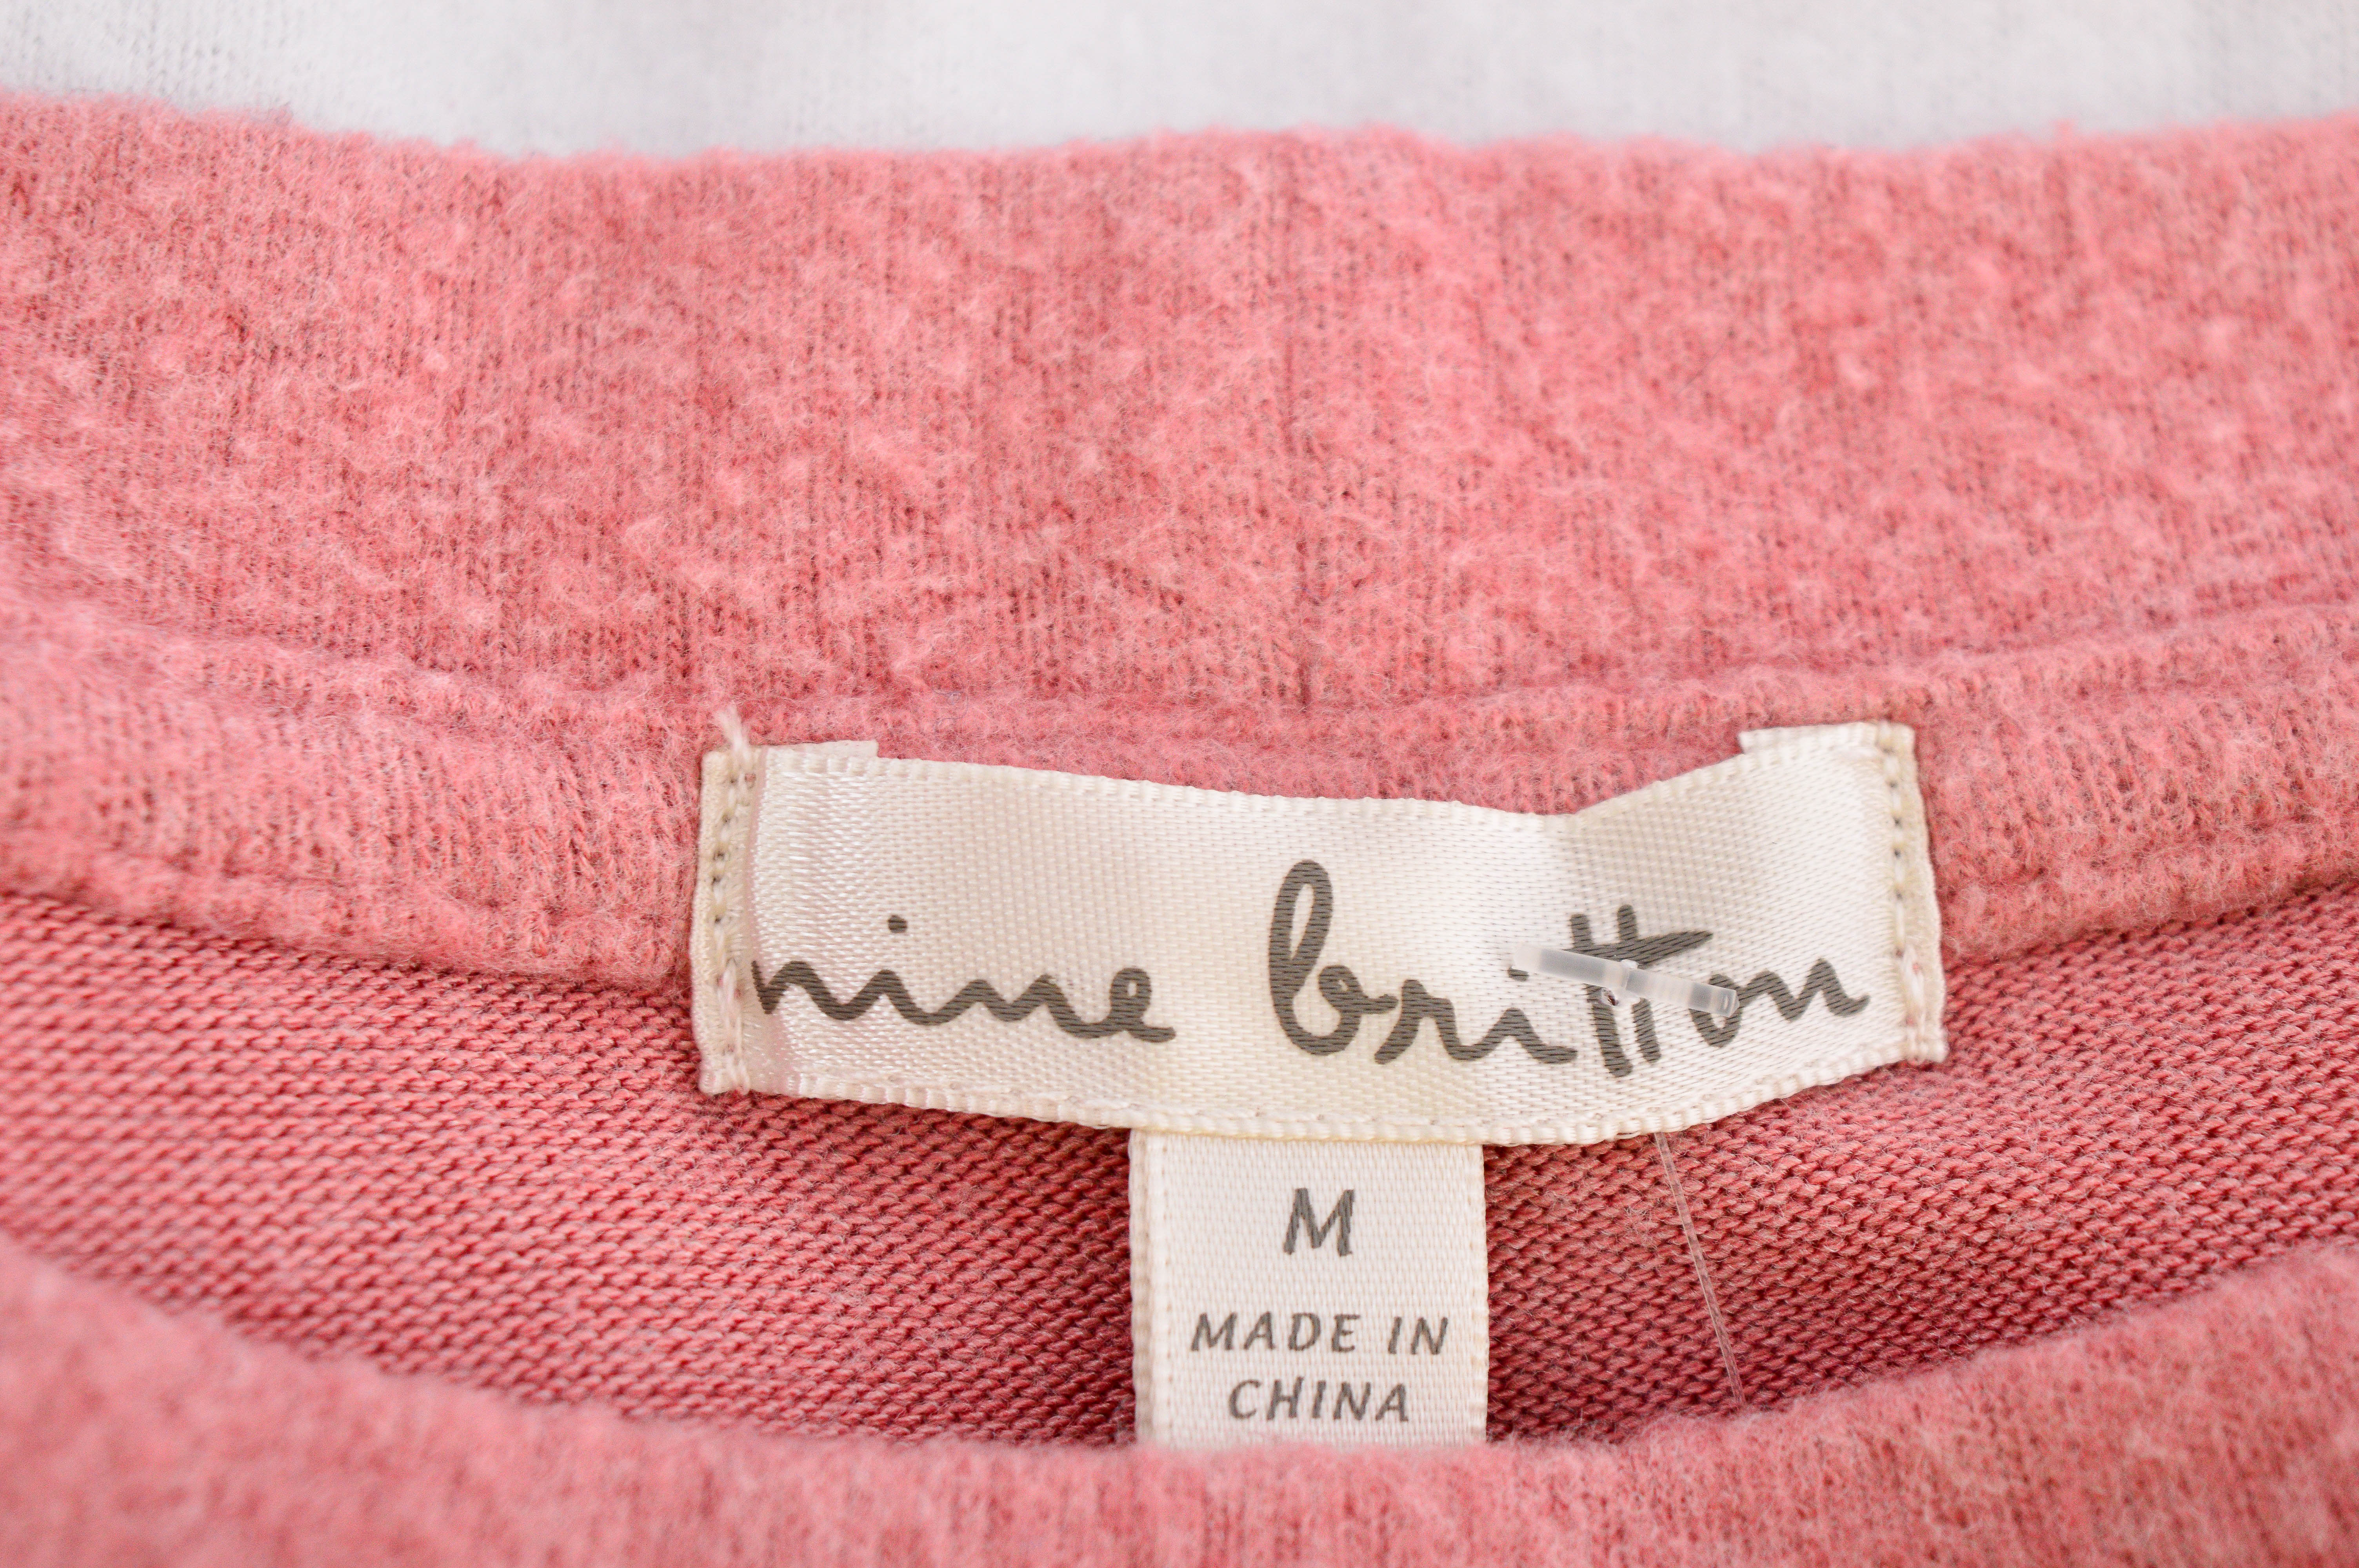 Γυναικείο ρούχο απο πολικό υφασμα - Nine Britton - 2